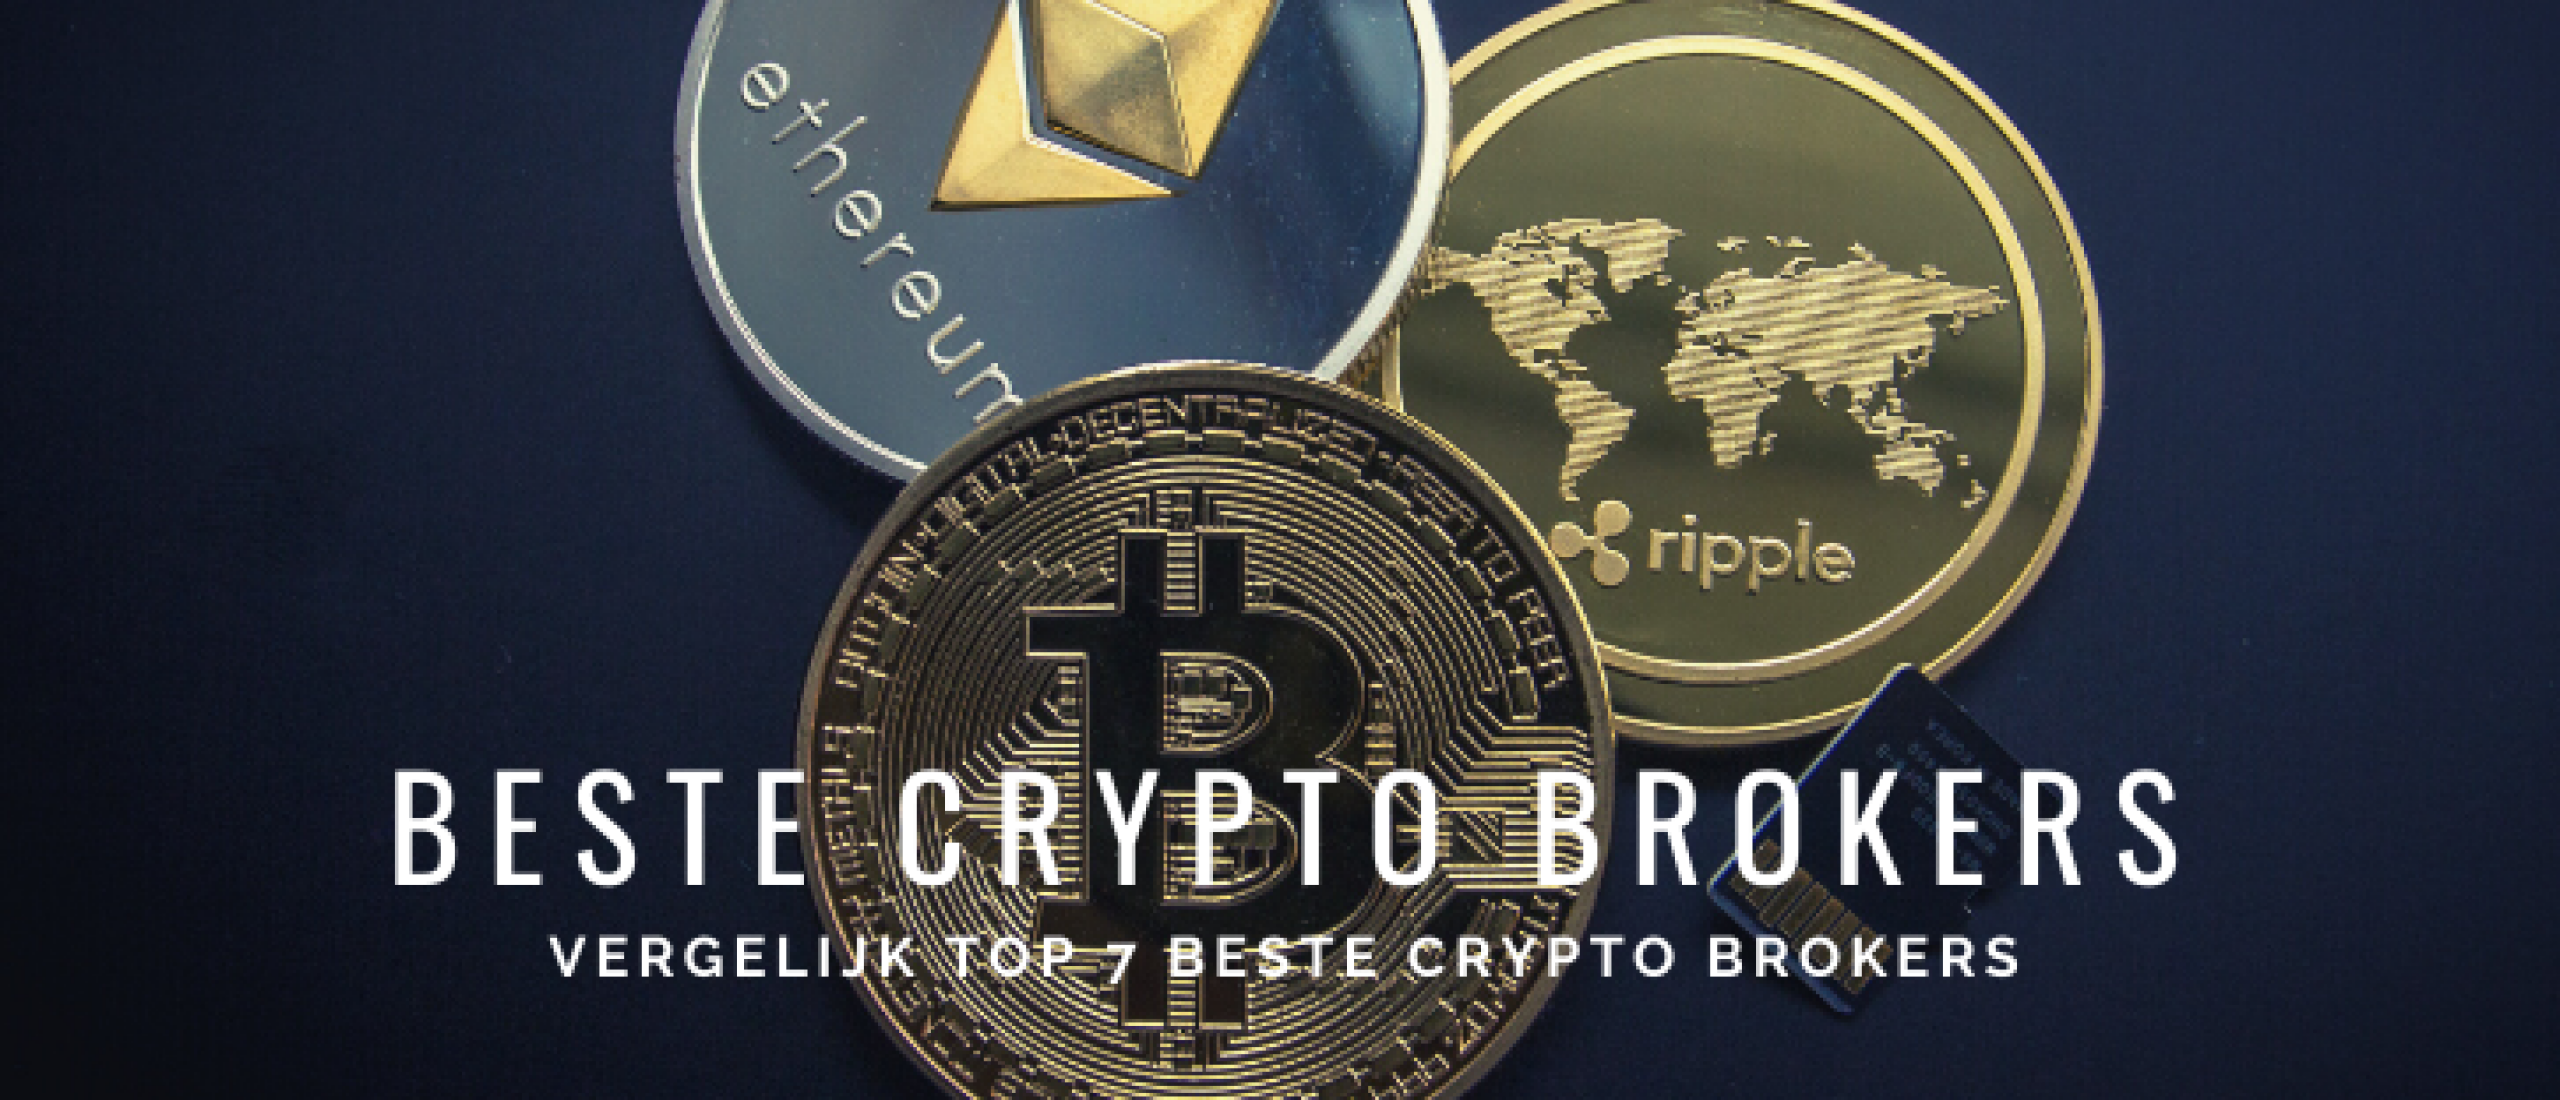 7x Beste Crypto Brokers Vergelijken voor Nederland | Happy Investors